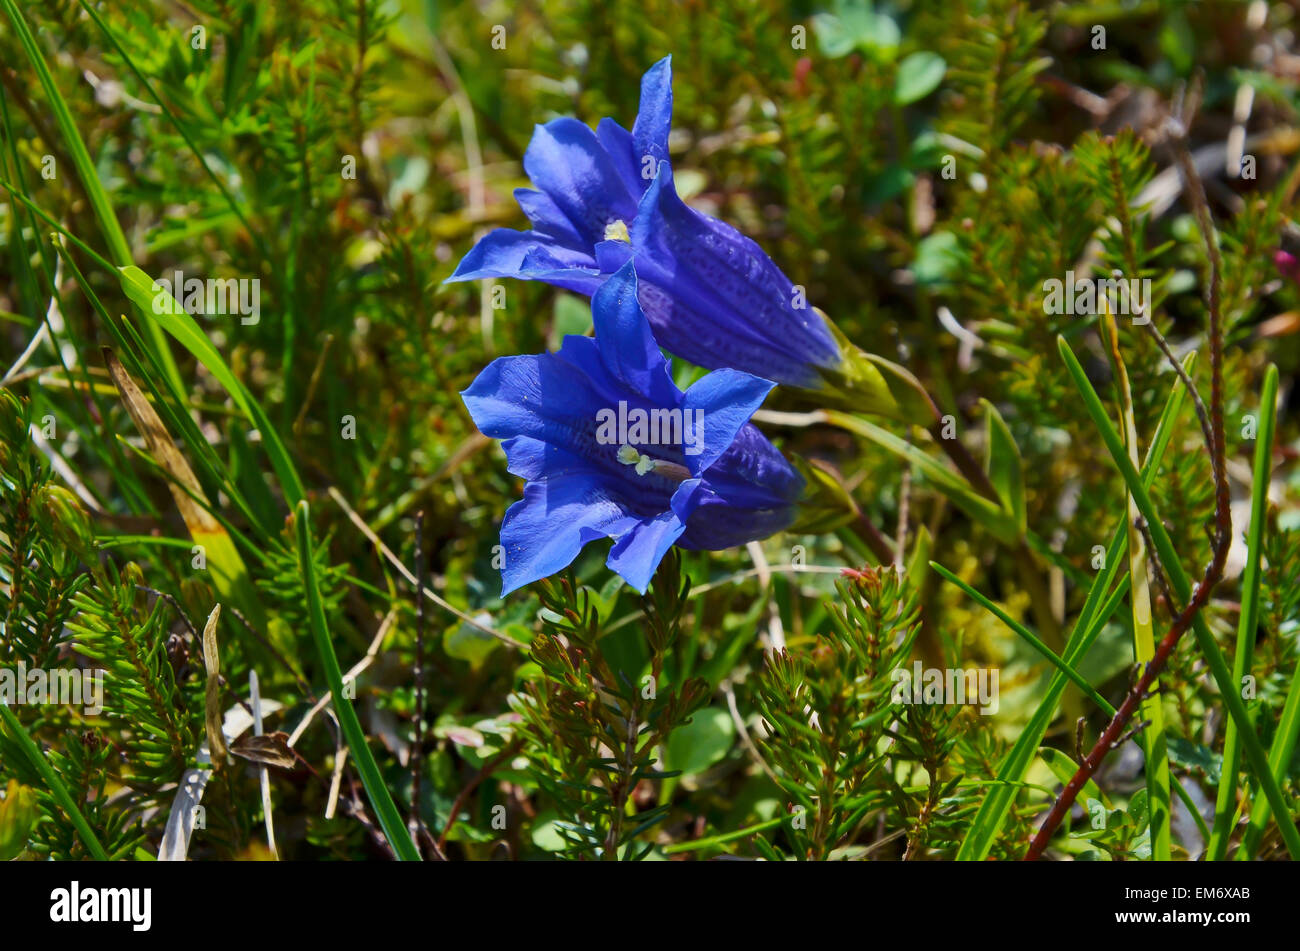 Eines der charakteristischsten Blumen in den Alpen - die stammlose, blaue  Enzian! Stockfotografie - Alamy